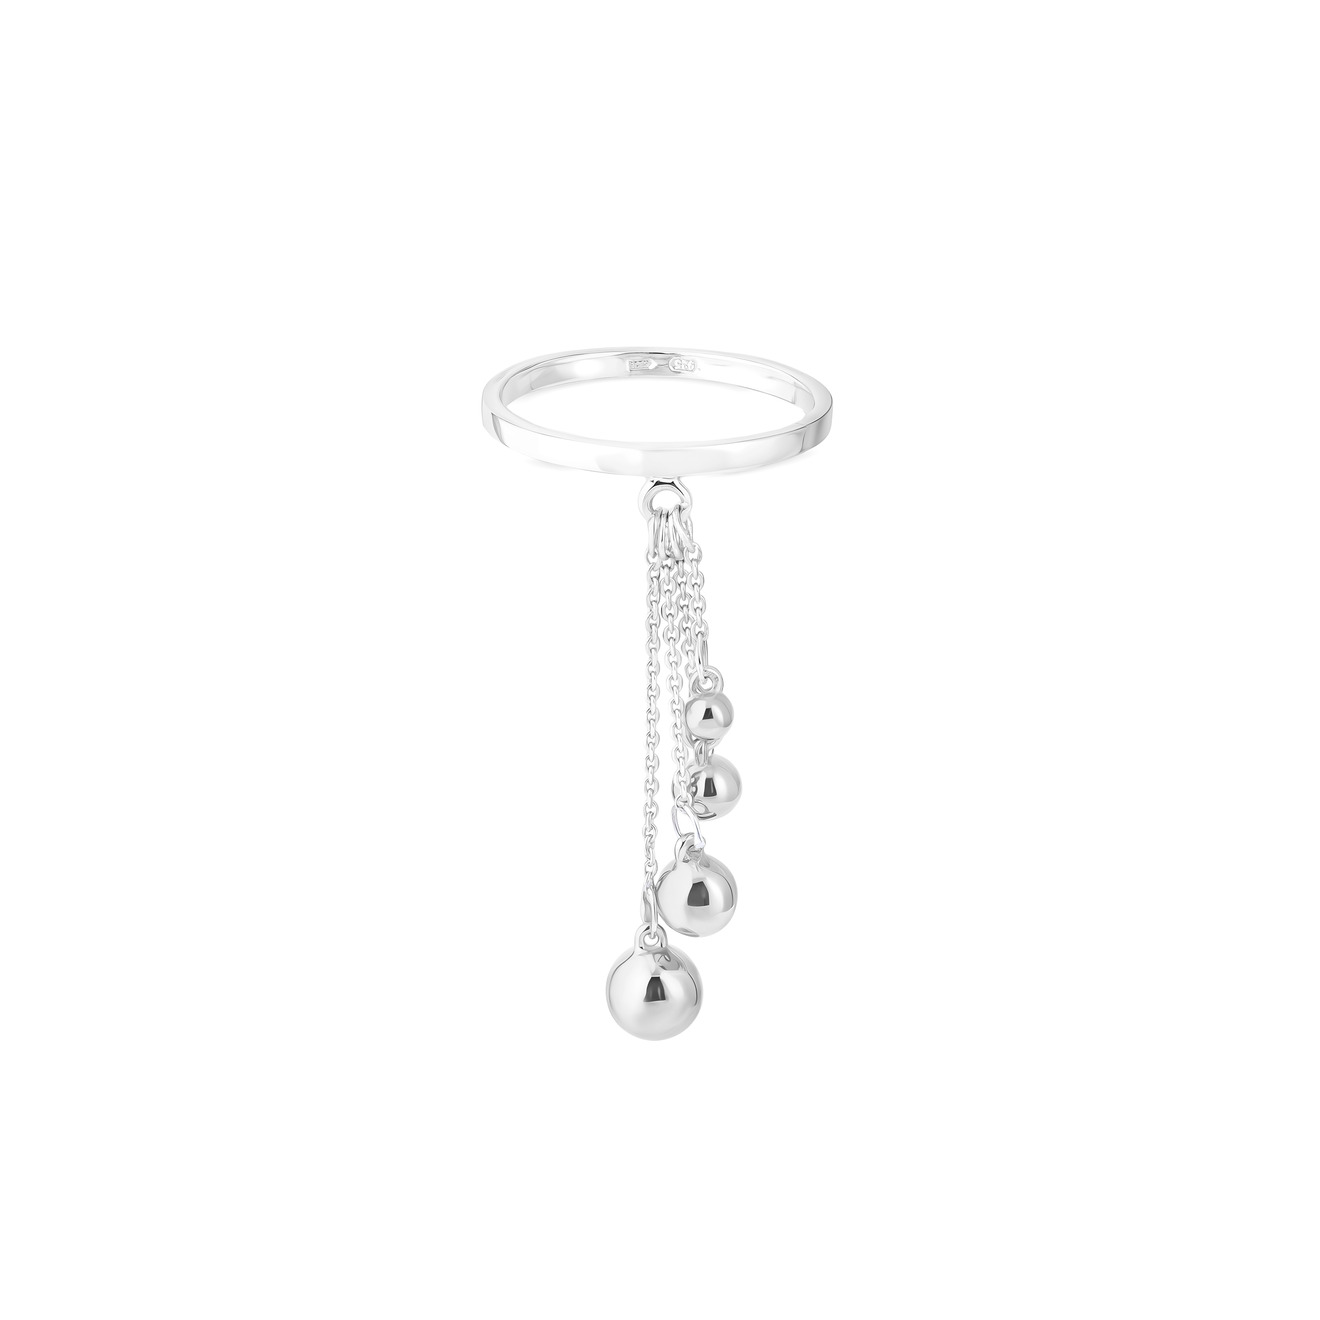 УРА jewelry Кольцо из серебра с шариками на цепочке ура jewelry моносерьга из серебра с кристаллами сваровски